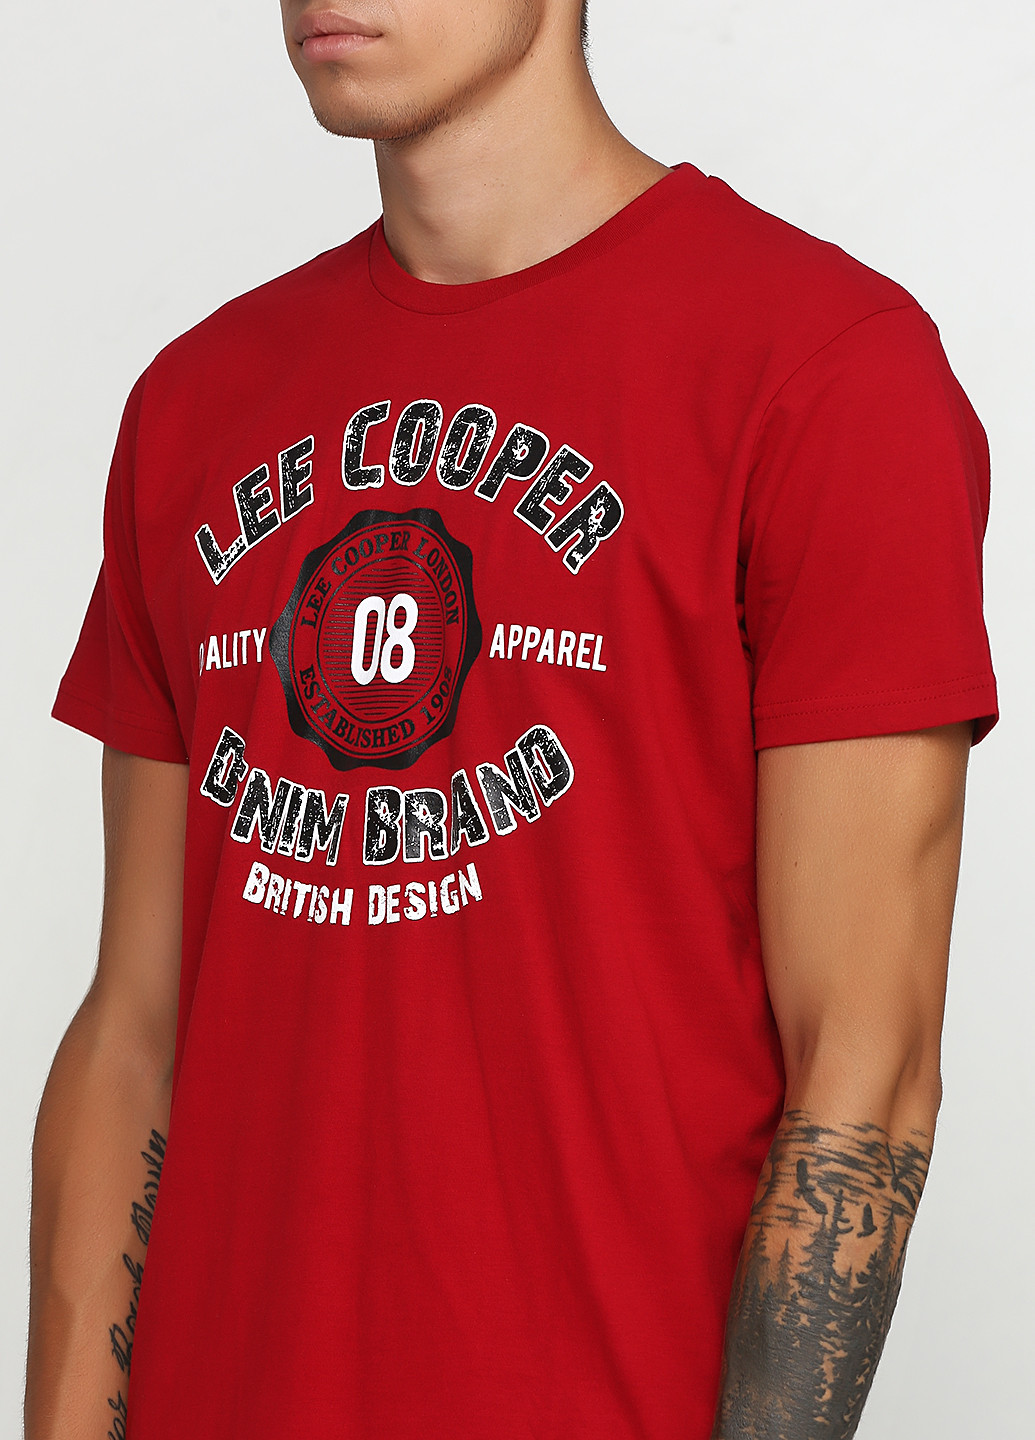 Вишневая футболка Lee Cooper